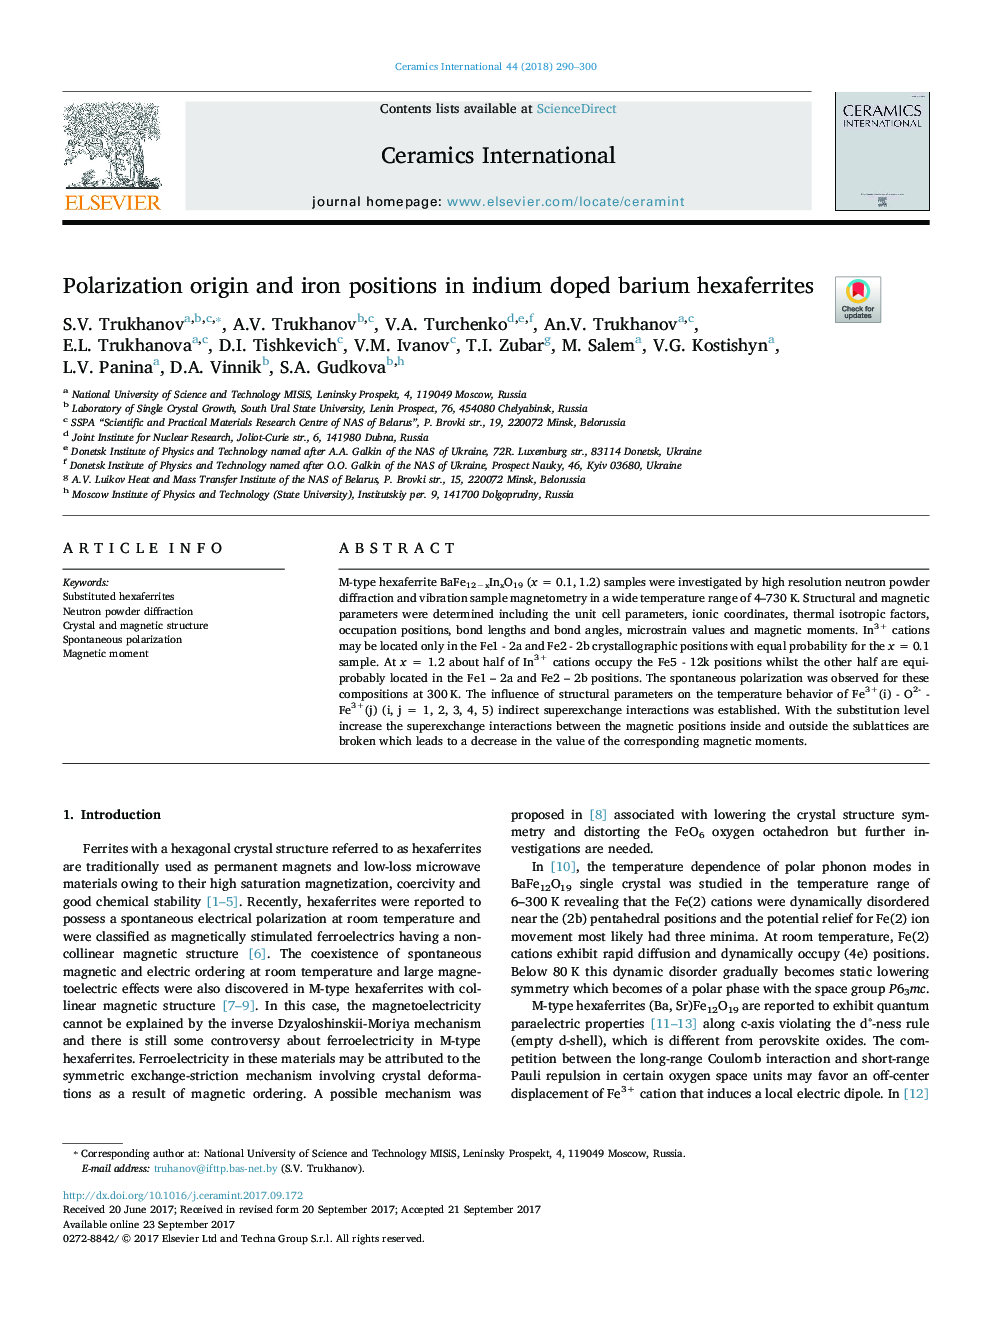 Polarization origin and iron positions in indium doped barium hexaferrites